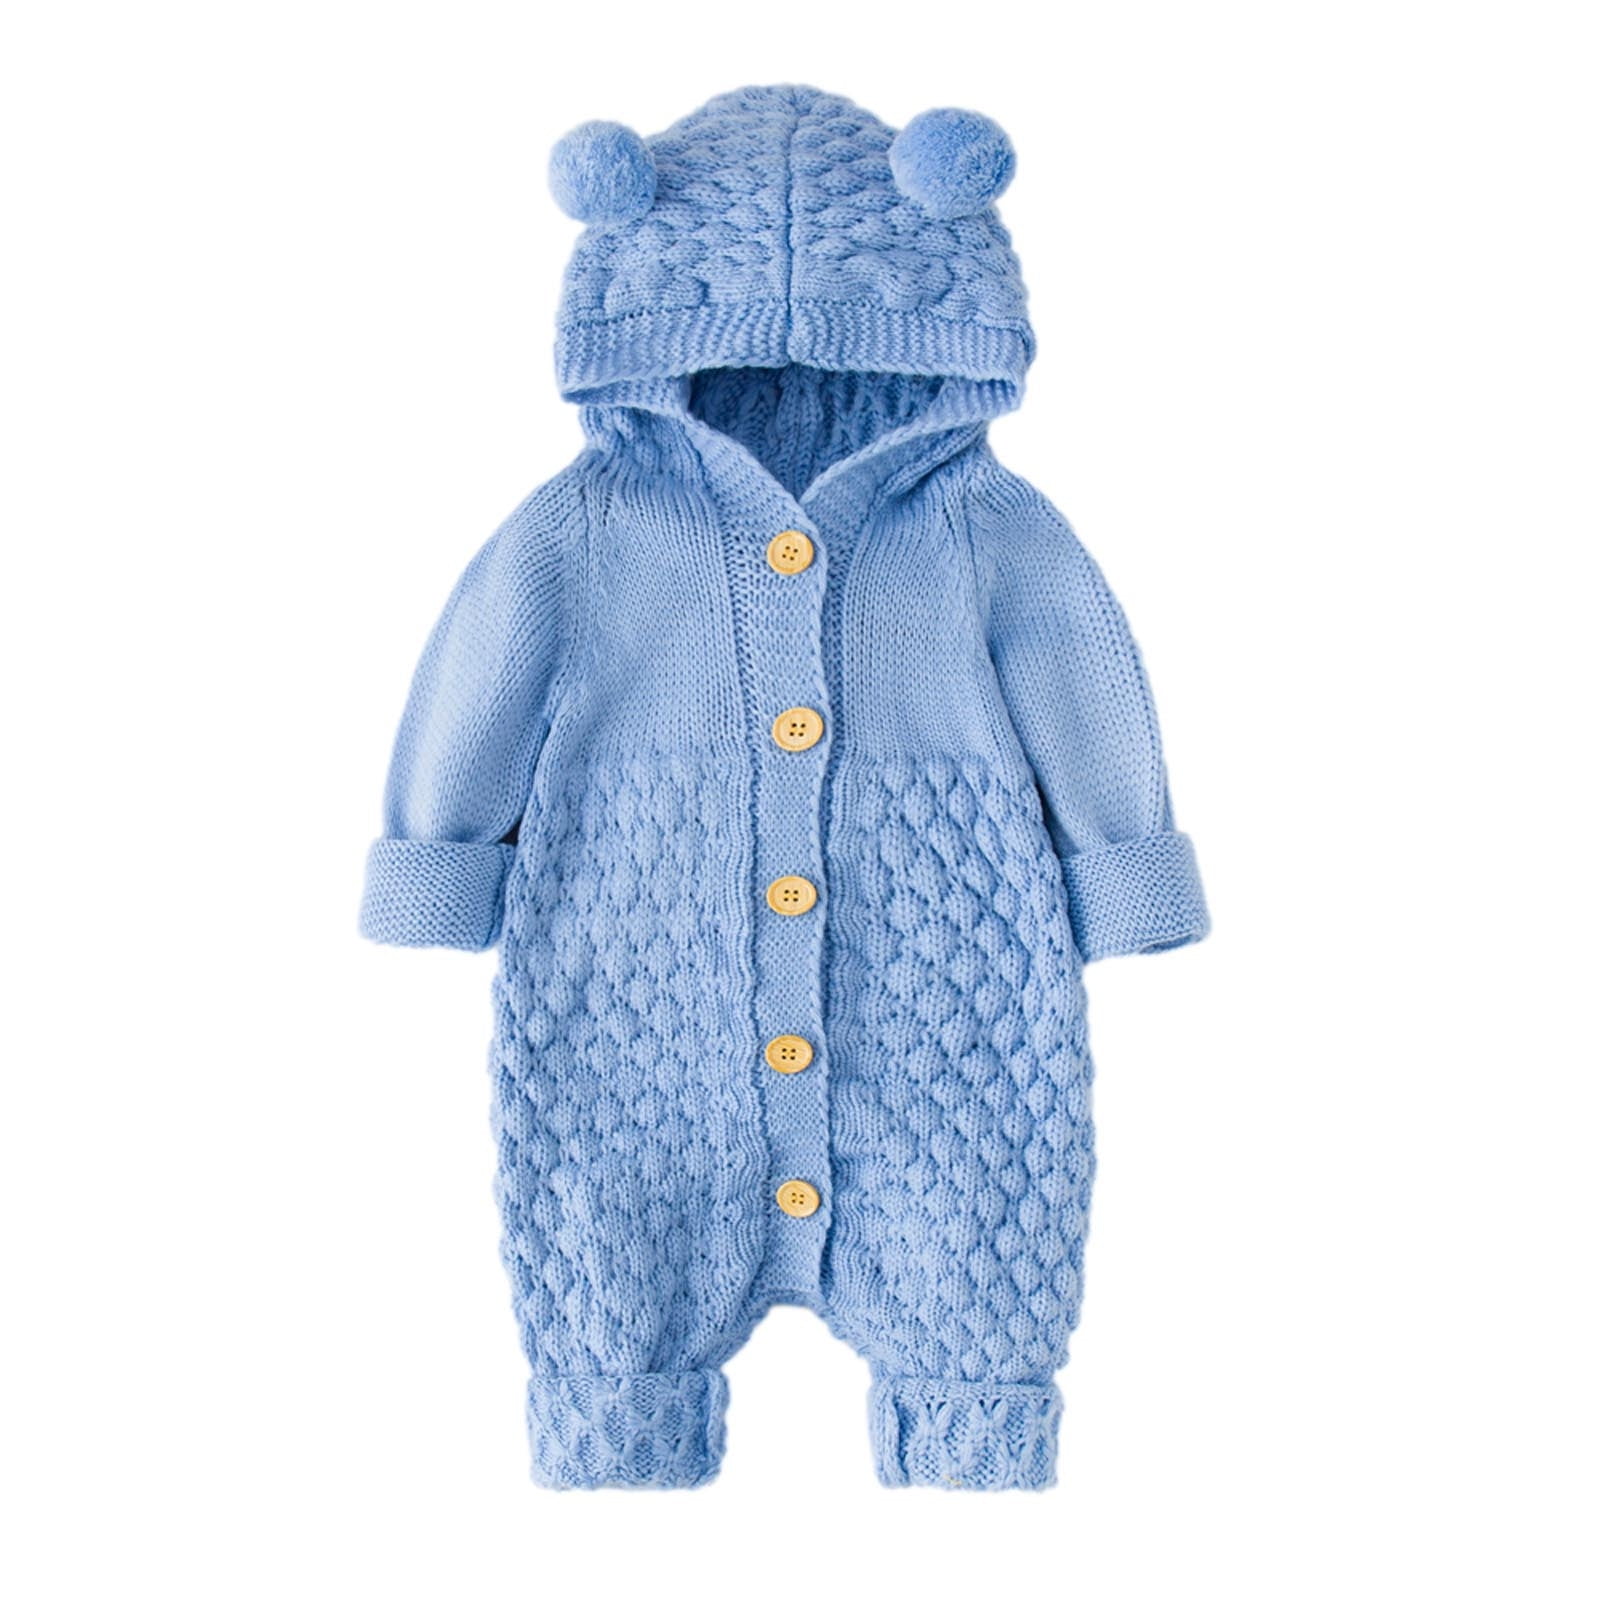 Newborn Infant Baby Girls Boys Winter Warm Coat Knit Outwear Hooded Jumpsuit 